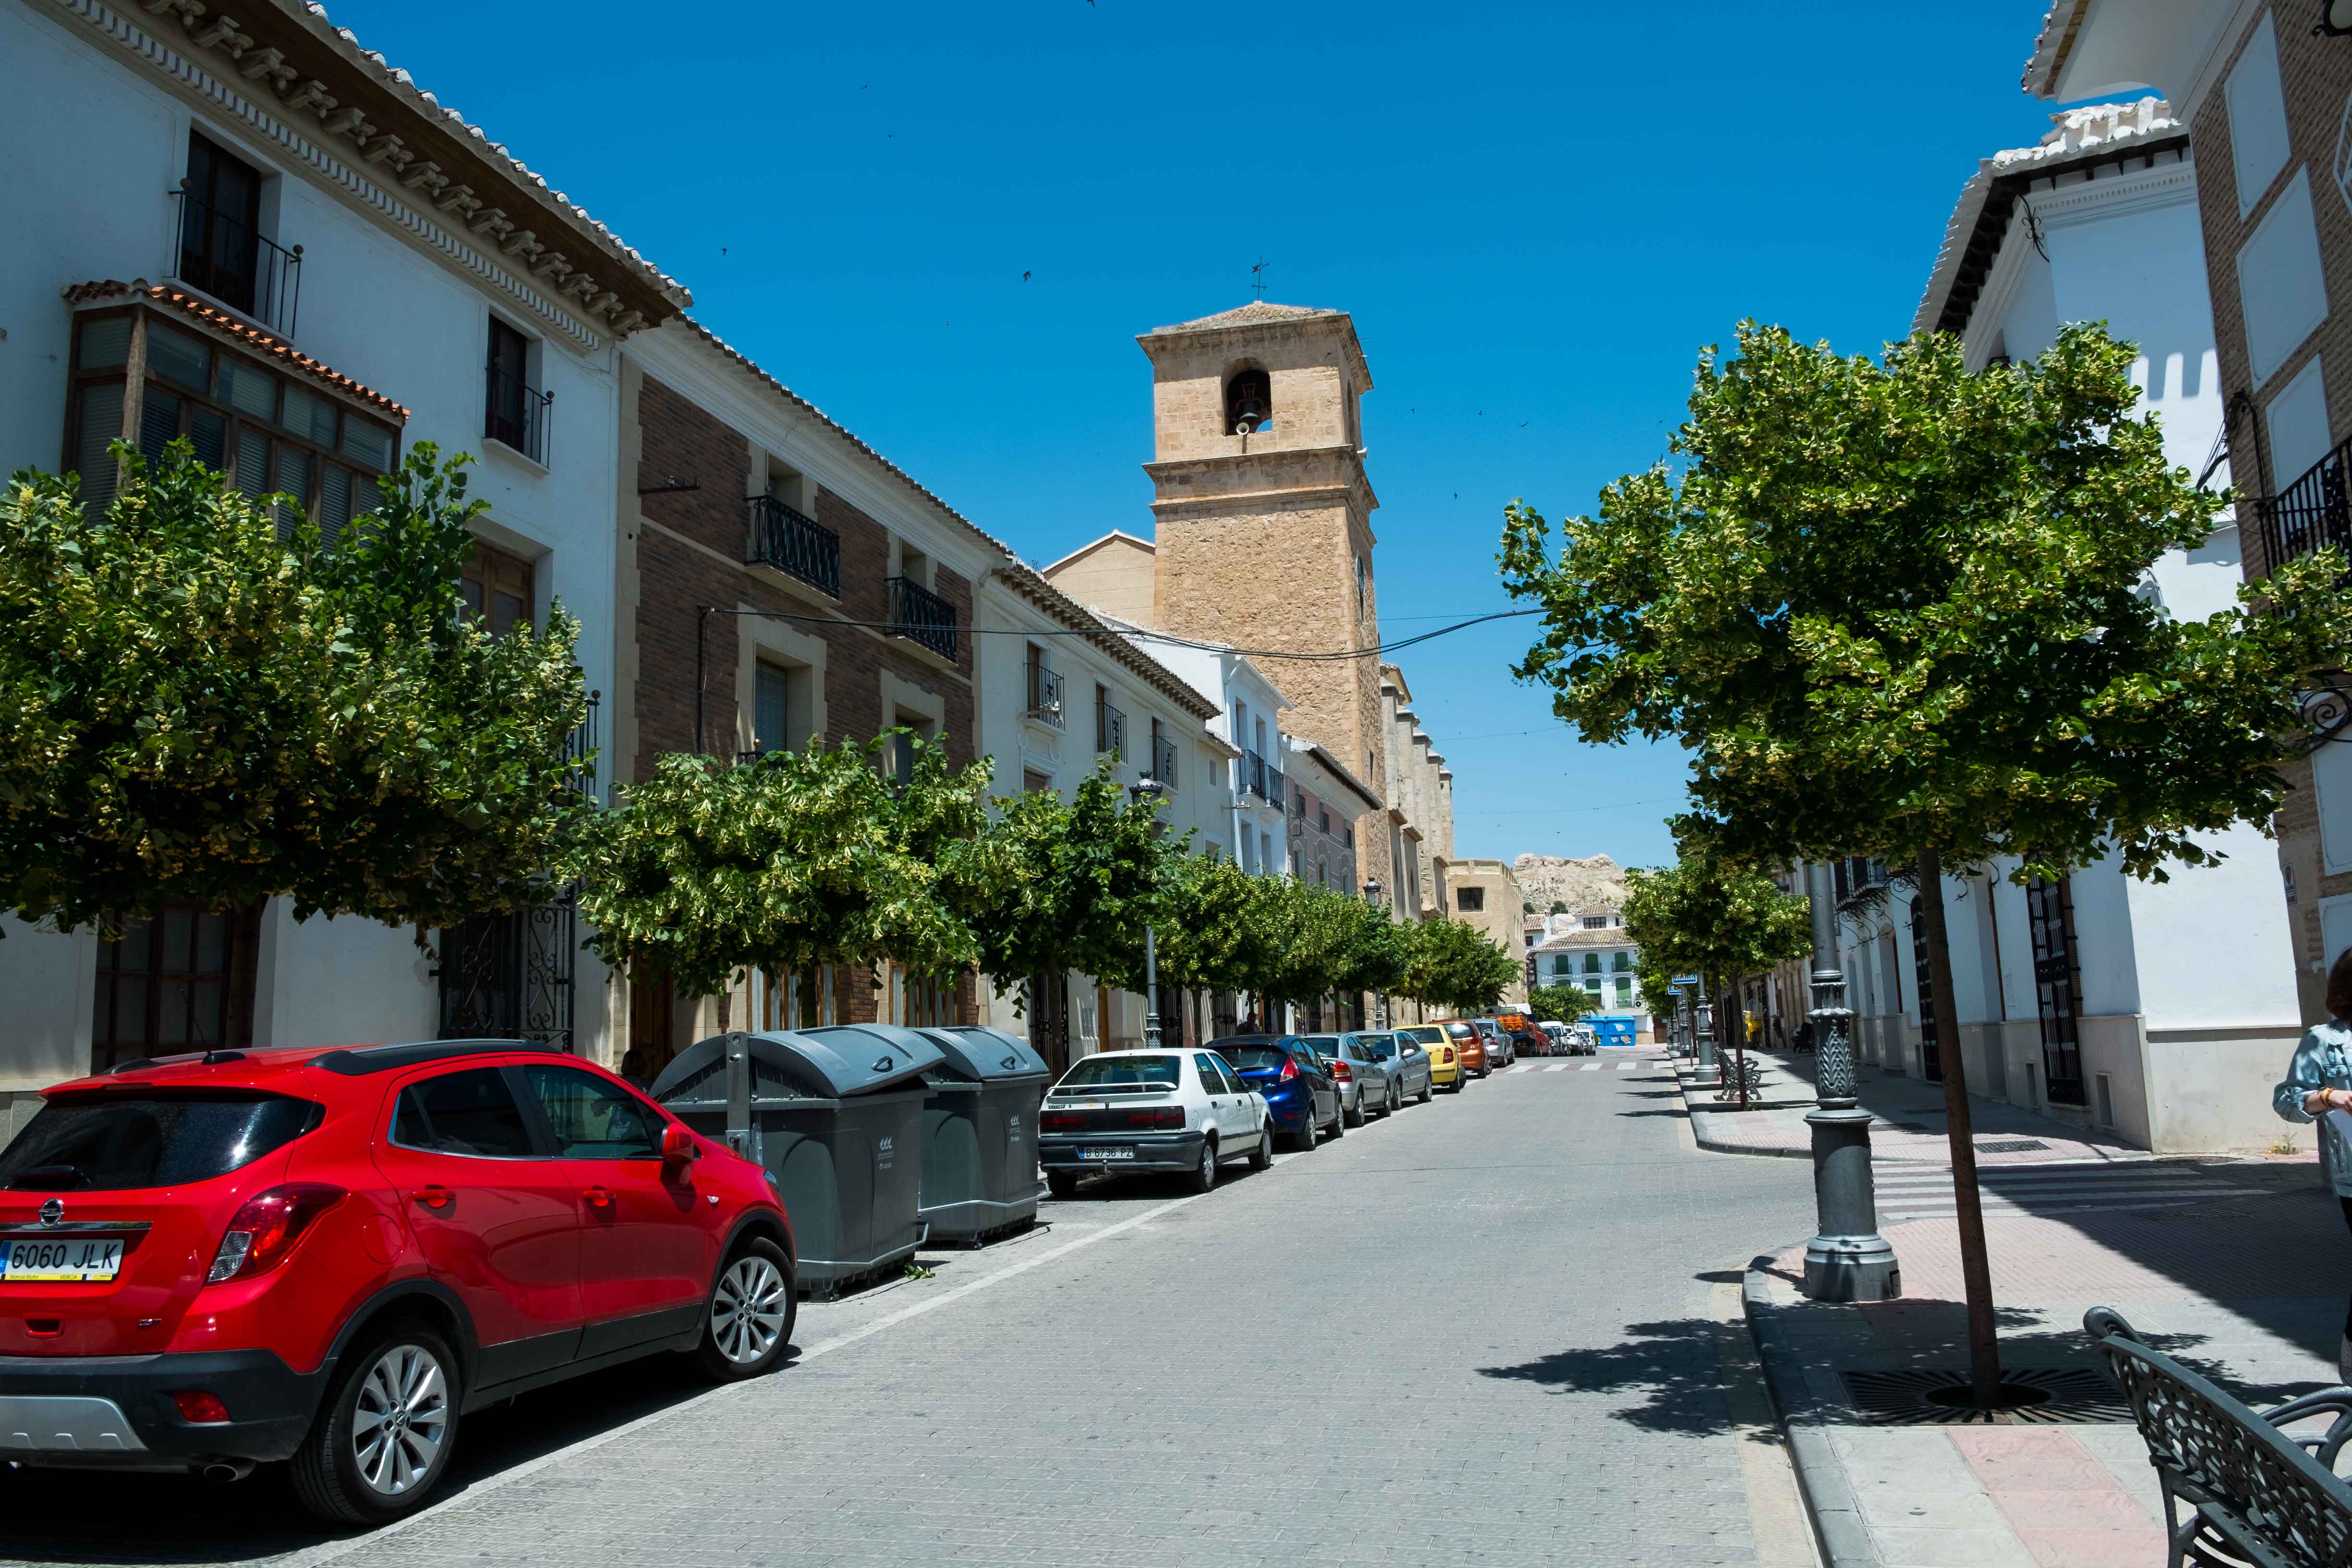 Vista general de la calle Corredera, escenario de la arquitectura civil velezana © Fotografía: Paco Bonilla